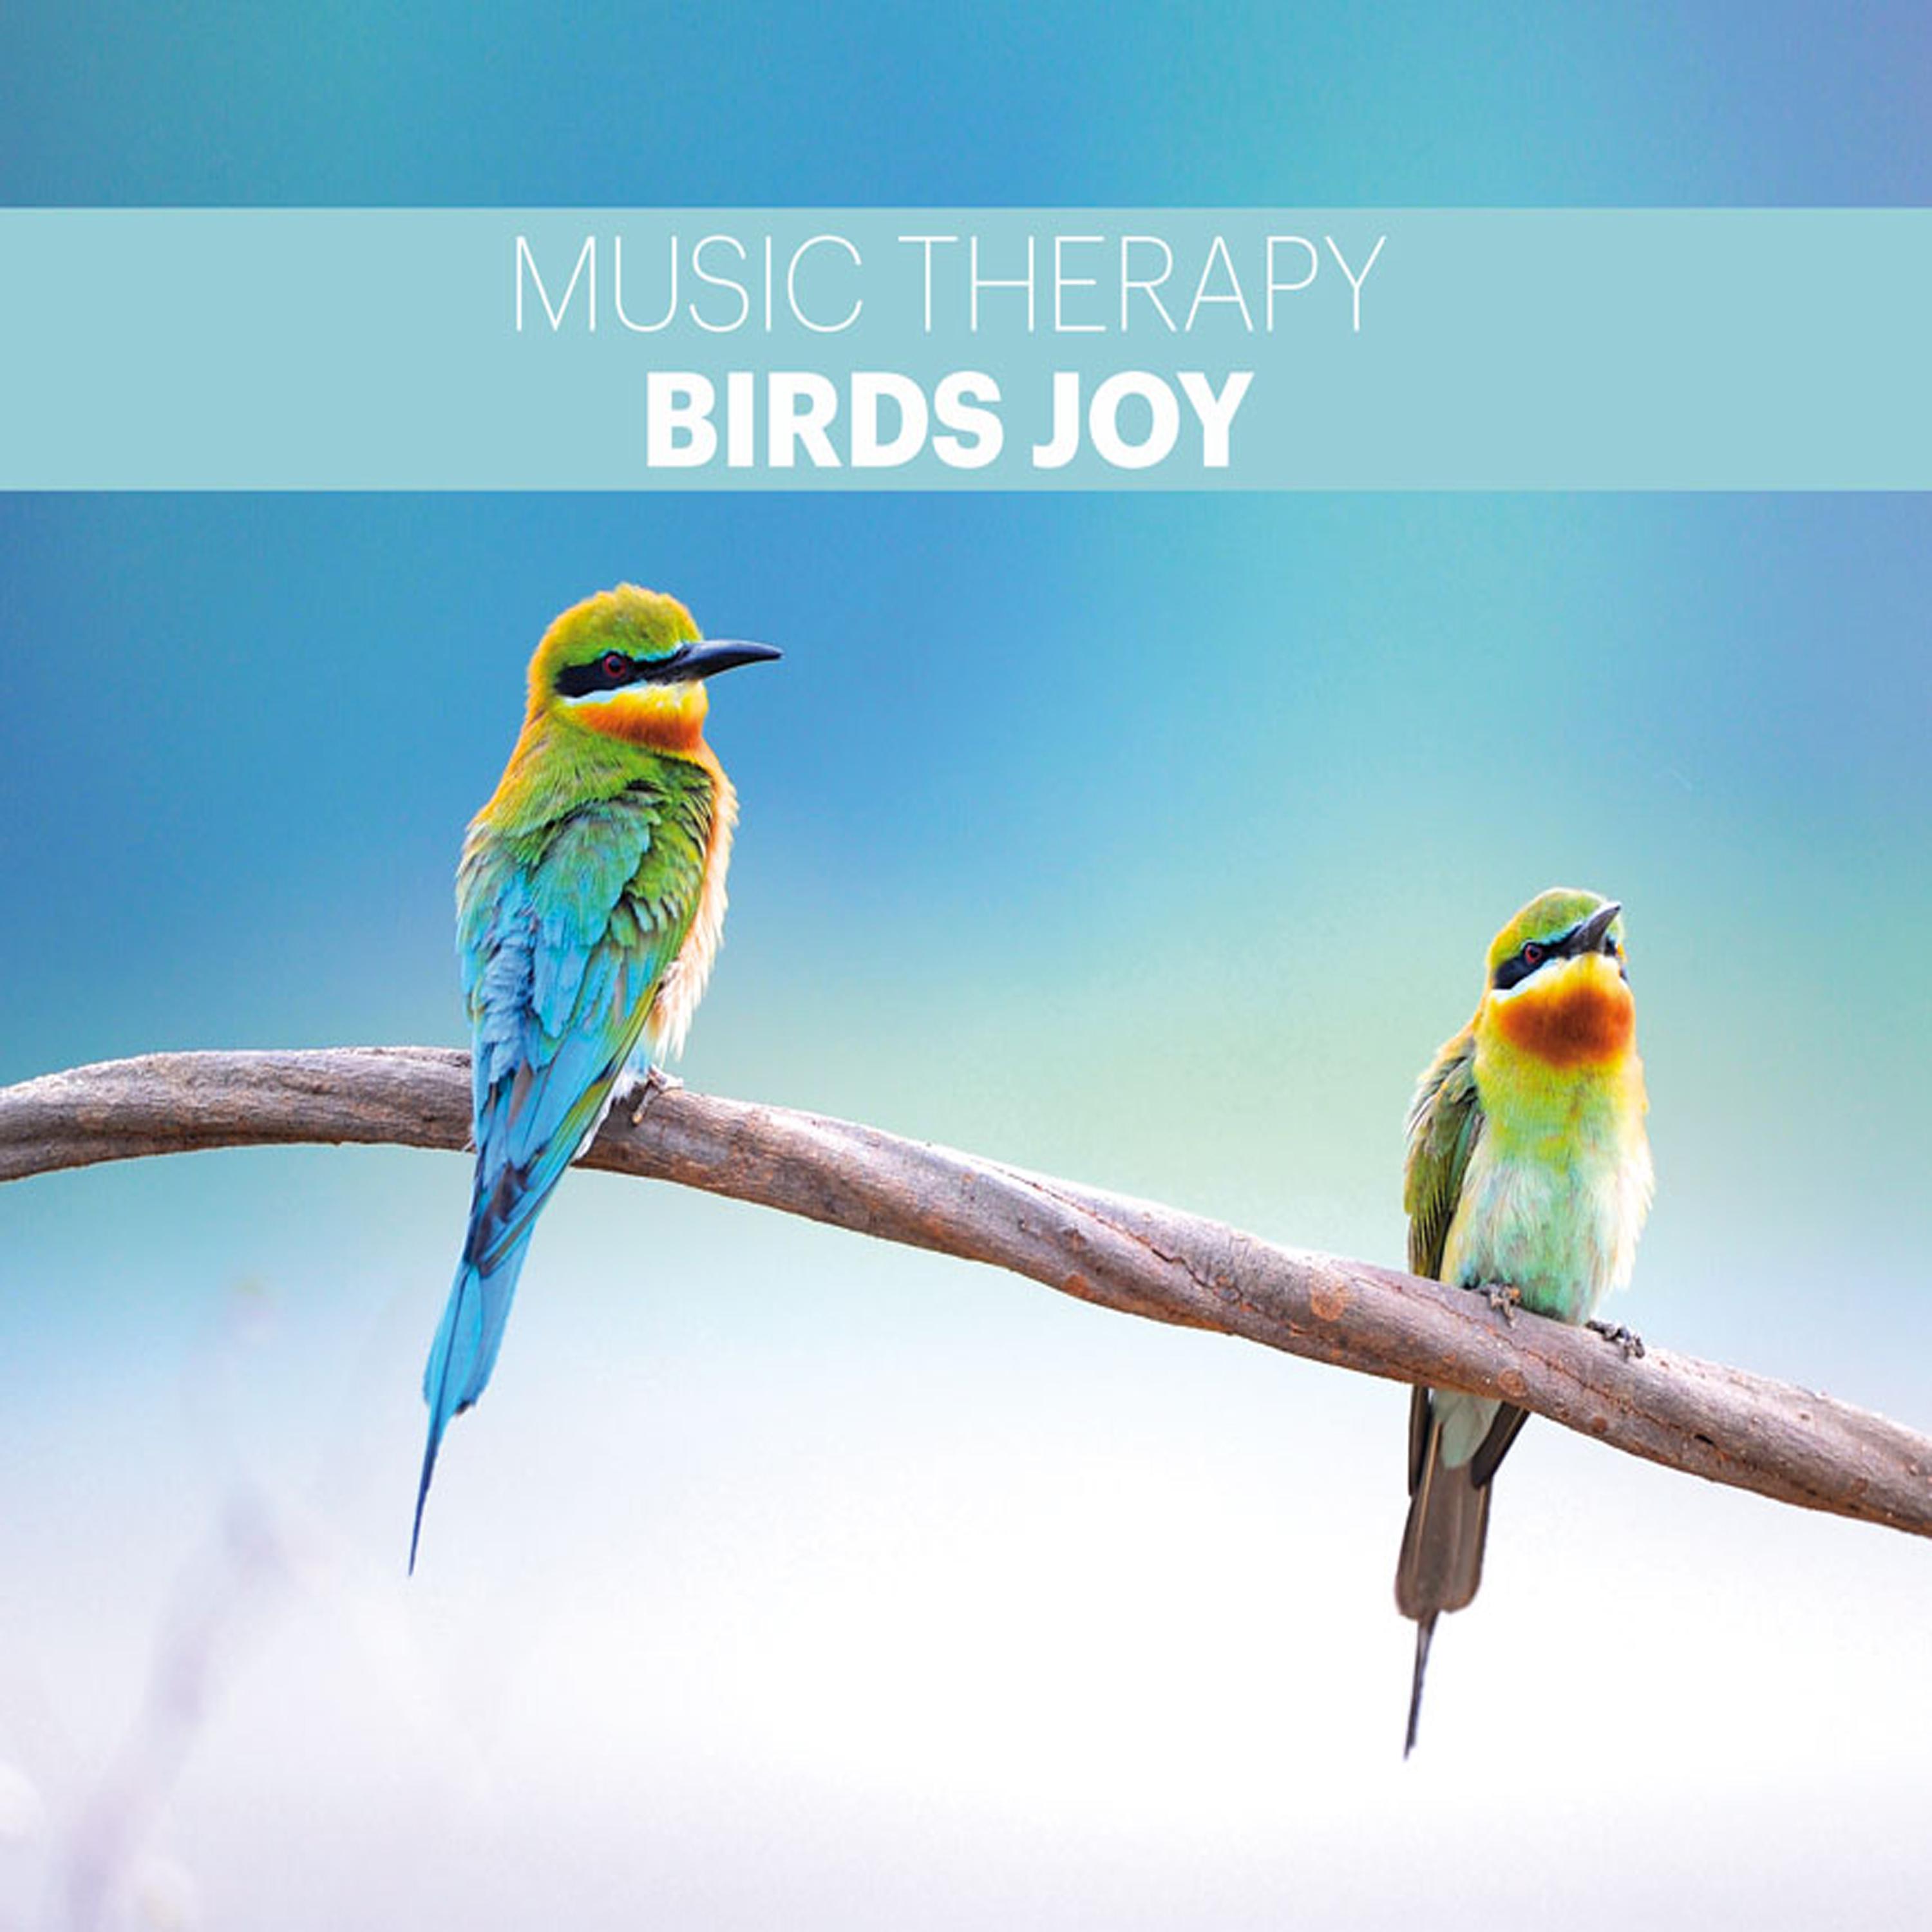 Birds' Song